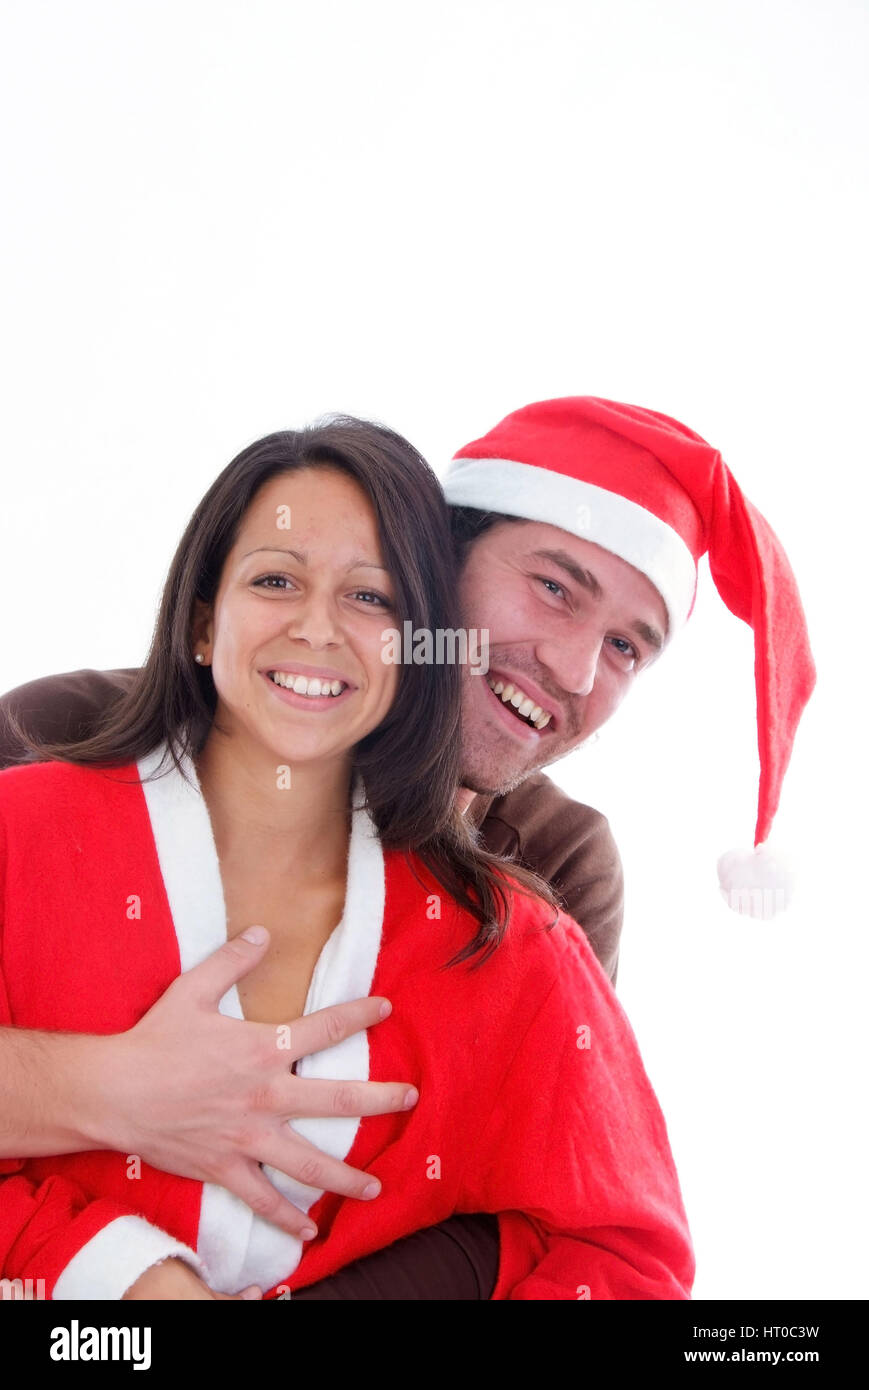 Lachendes Weihnachtsp? Rchen - Weihnachten-paar Stockfoto